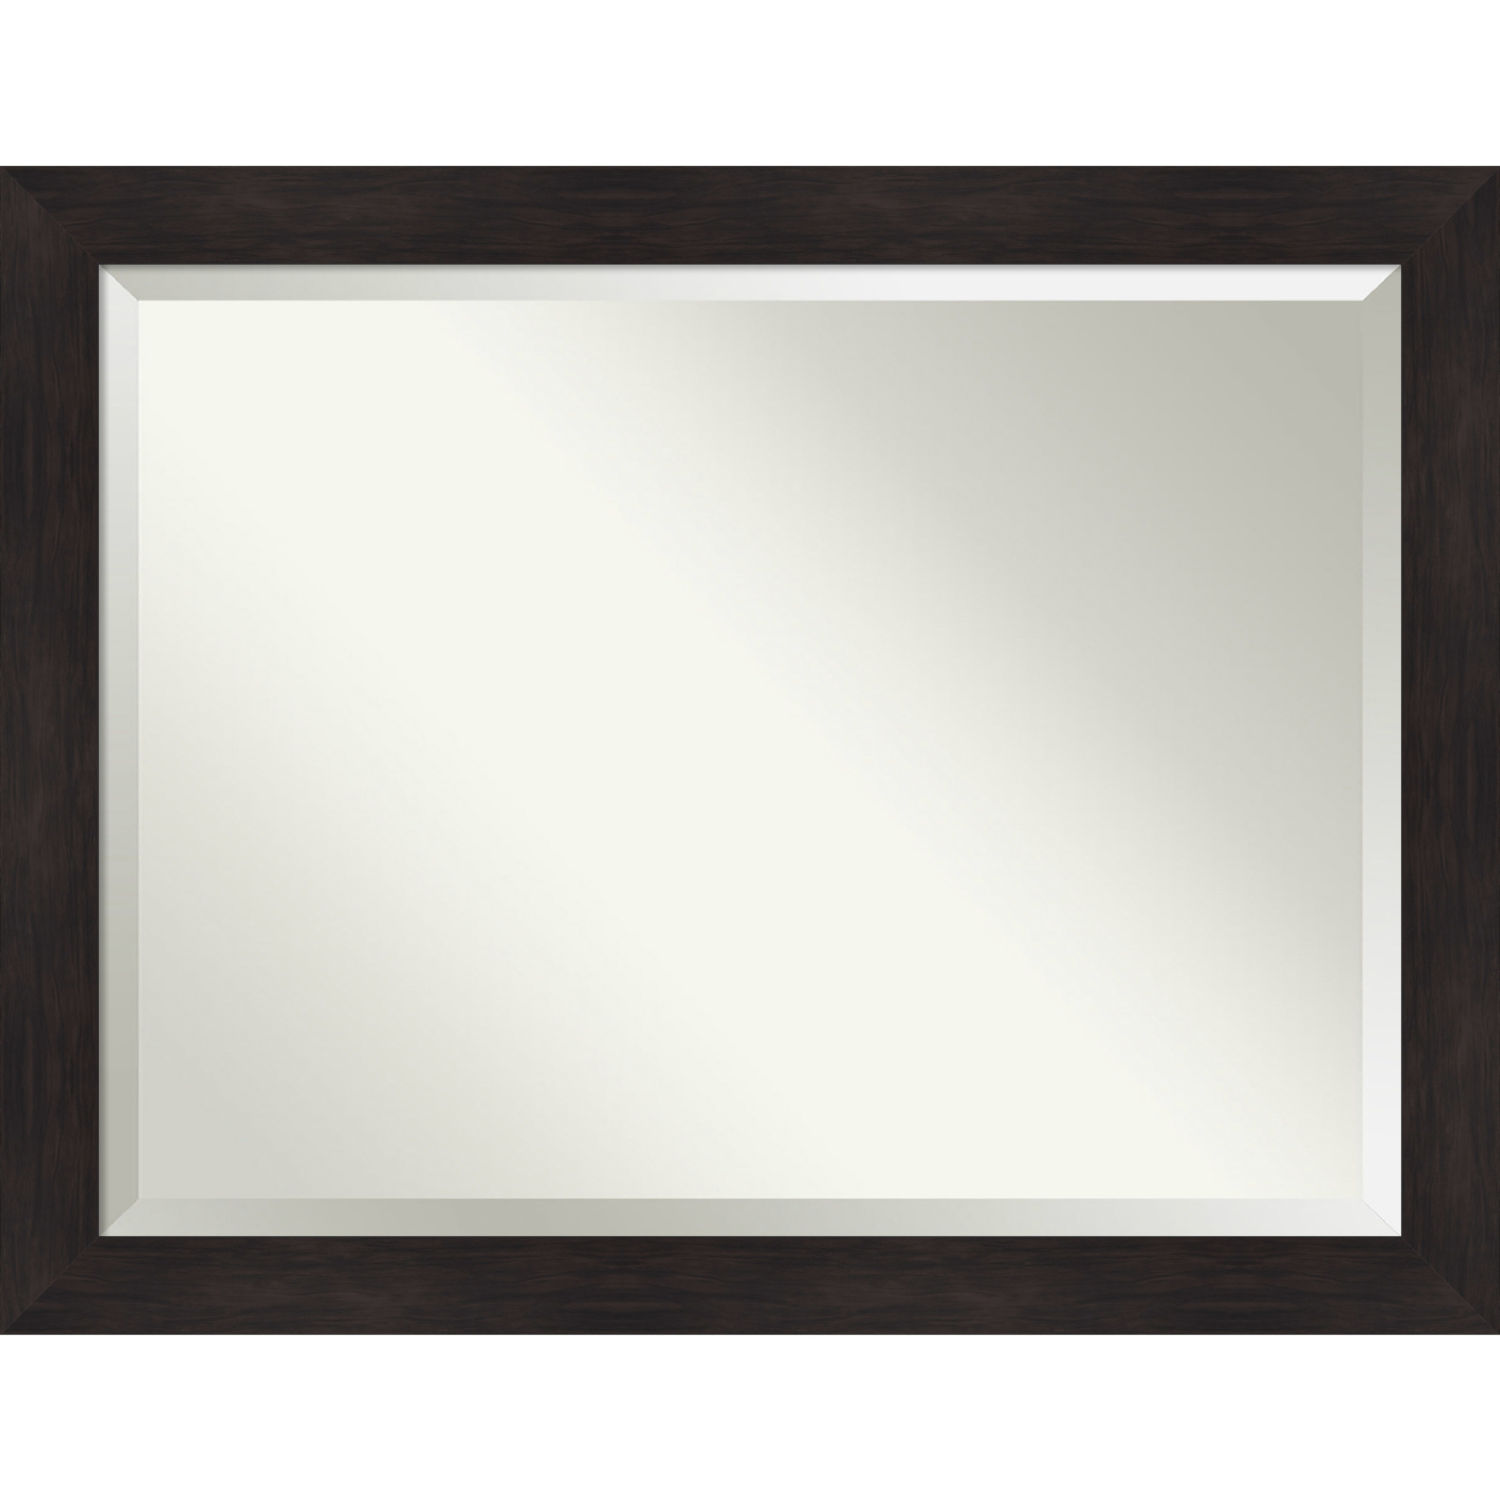 Espresso 45W X 35H-Inch Bathroom Vanity Wall Mirror